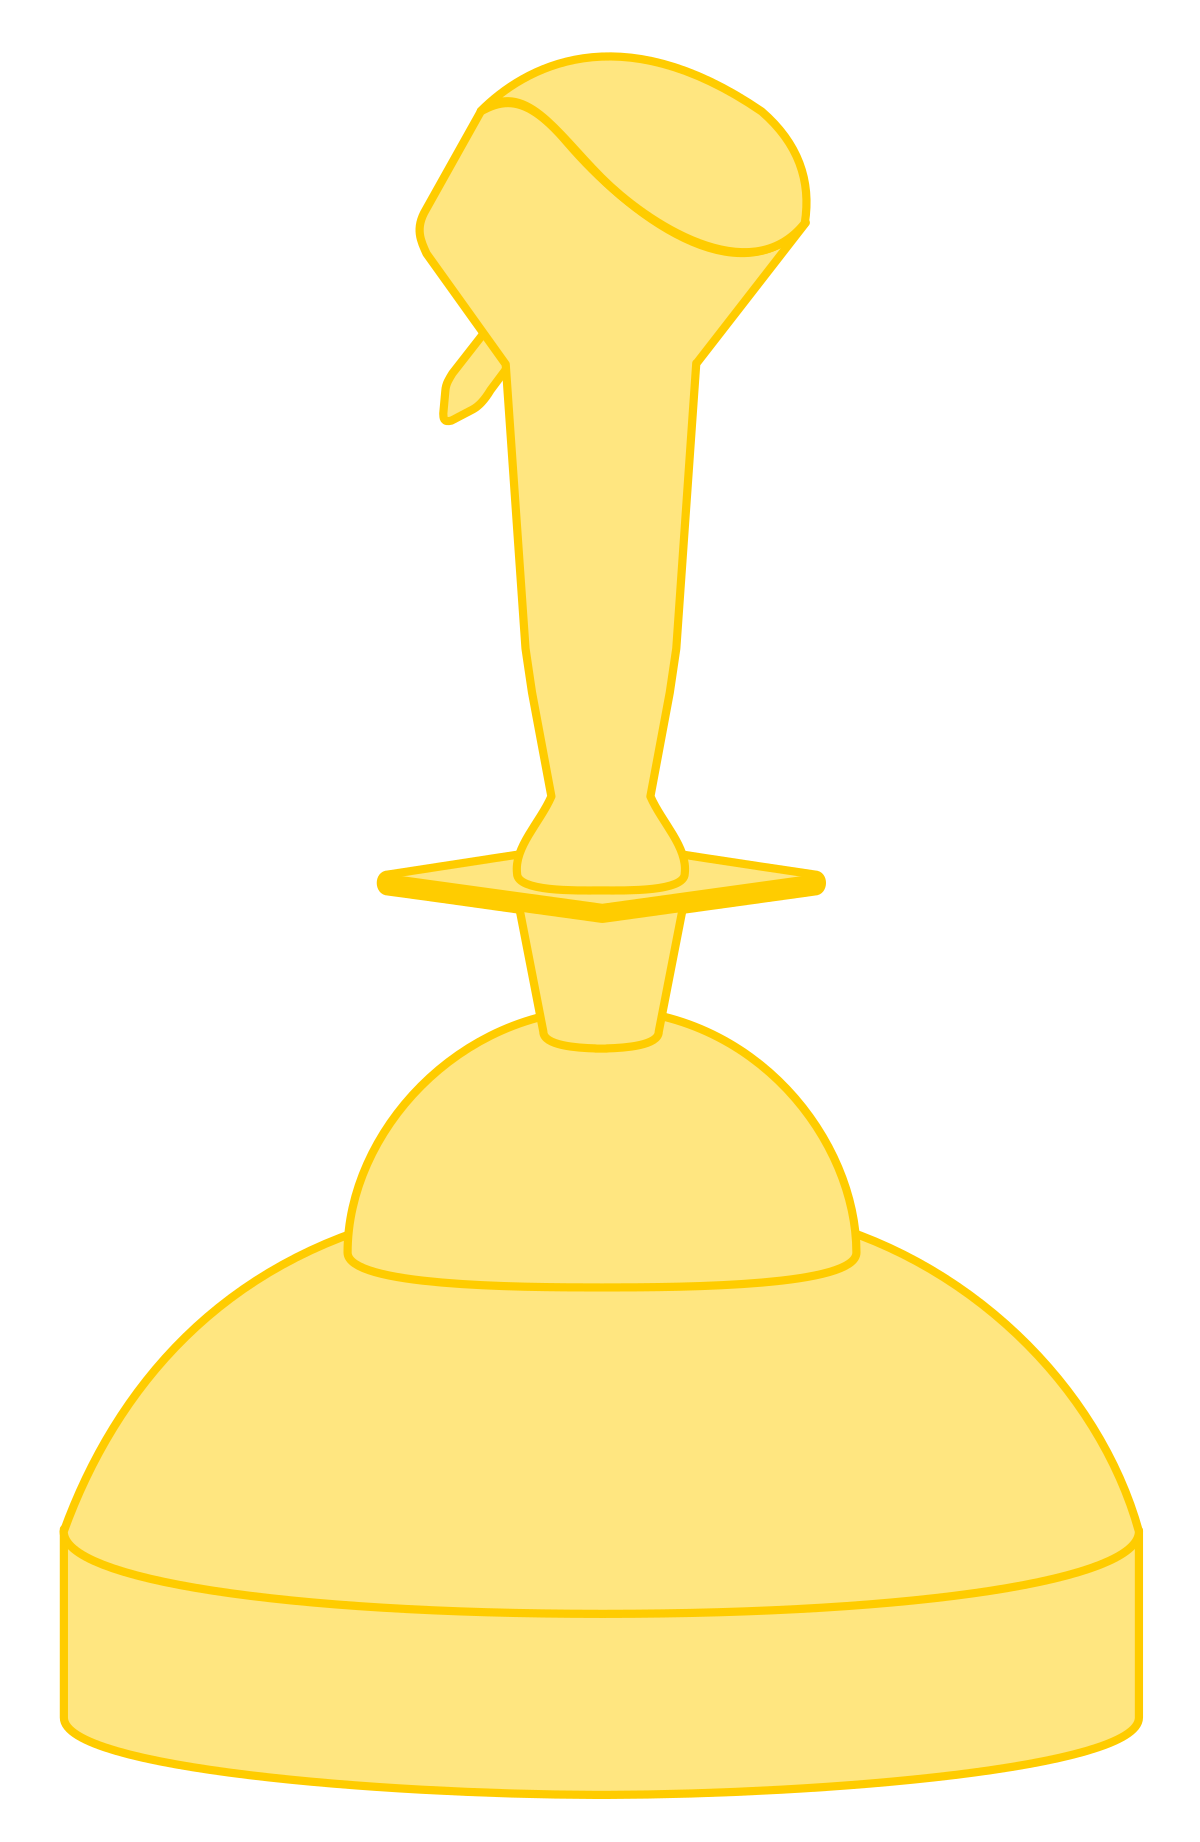 Download PNG image - Golden Award PNG Background Image 